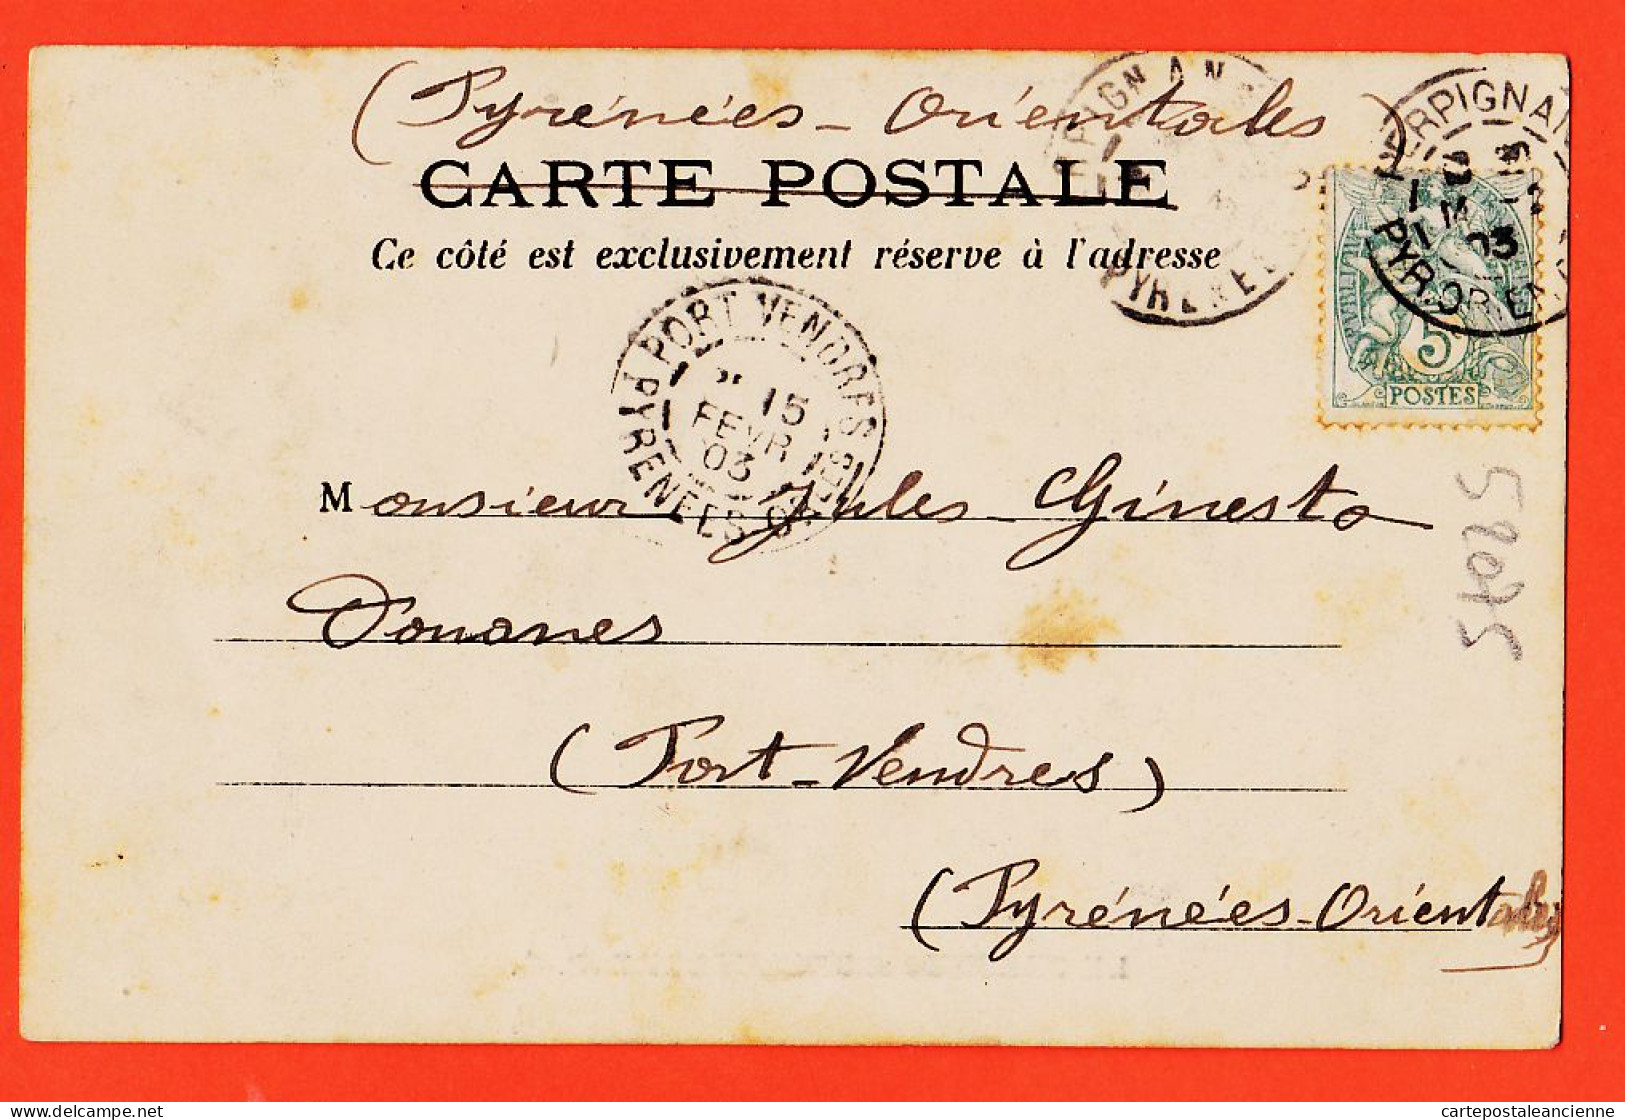 01957 / LE PERTHUS Et BELLEGARDE (66) 1903 De Marcel ORIOL à Jules GINESTO Douanes Port-Vendres / PY-OLIVER Perpignan - Autres & Non Classés